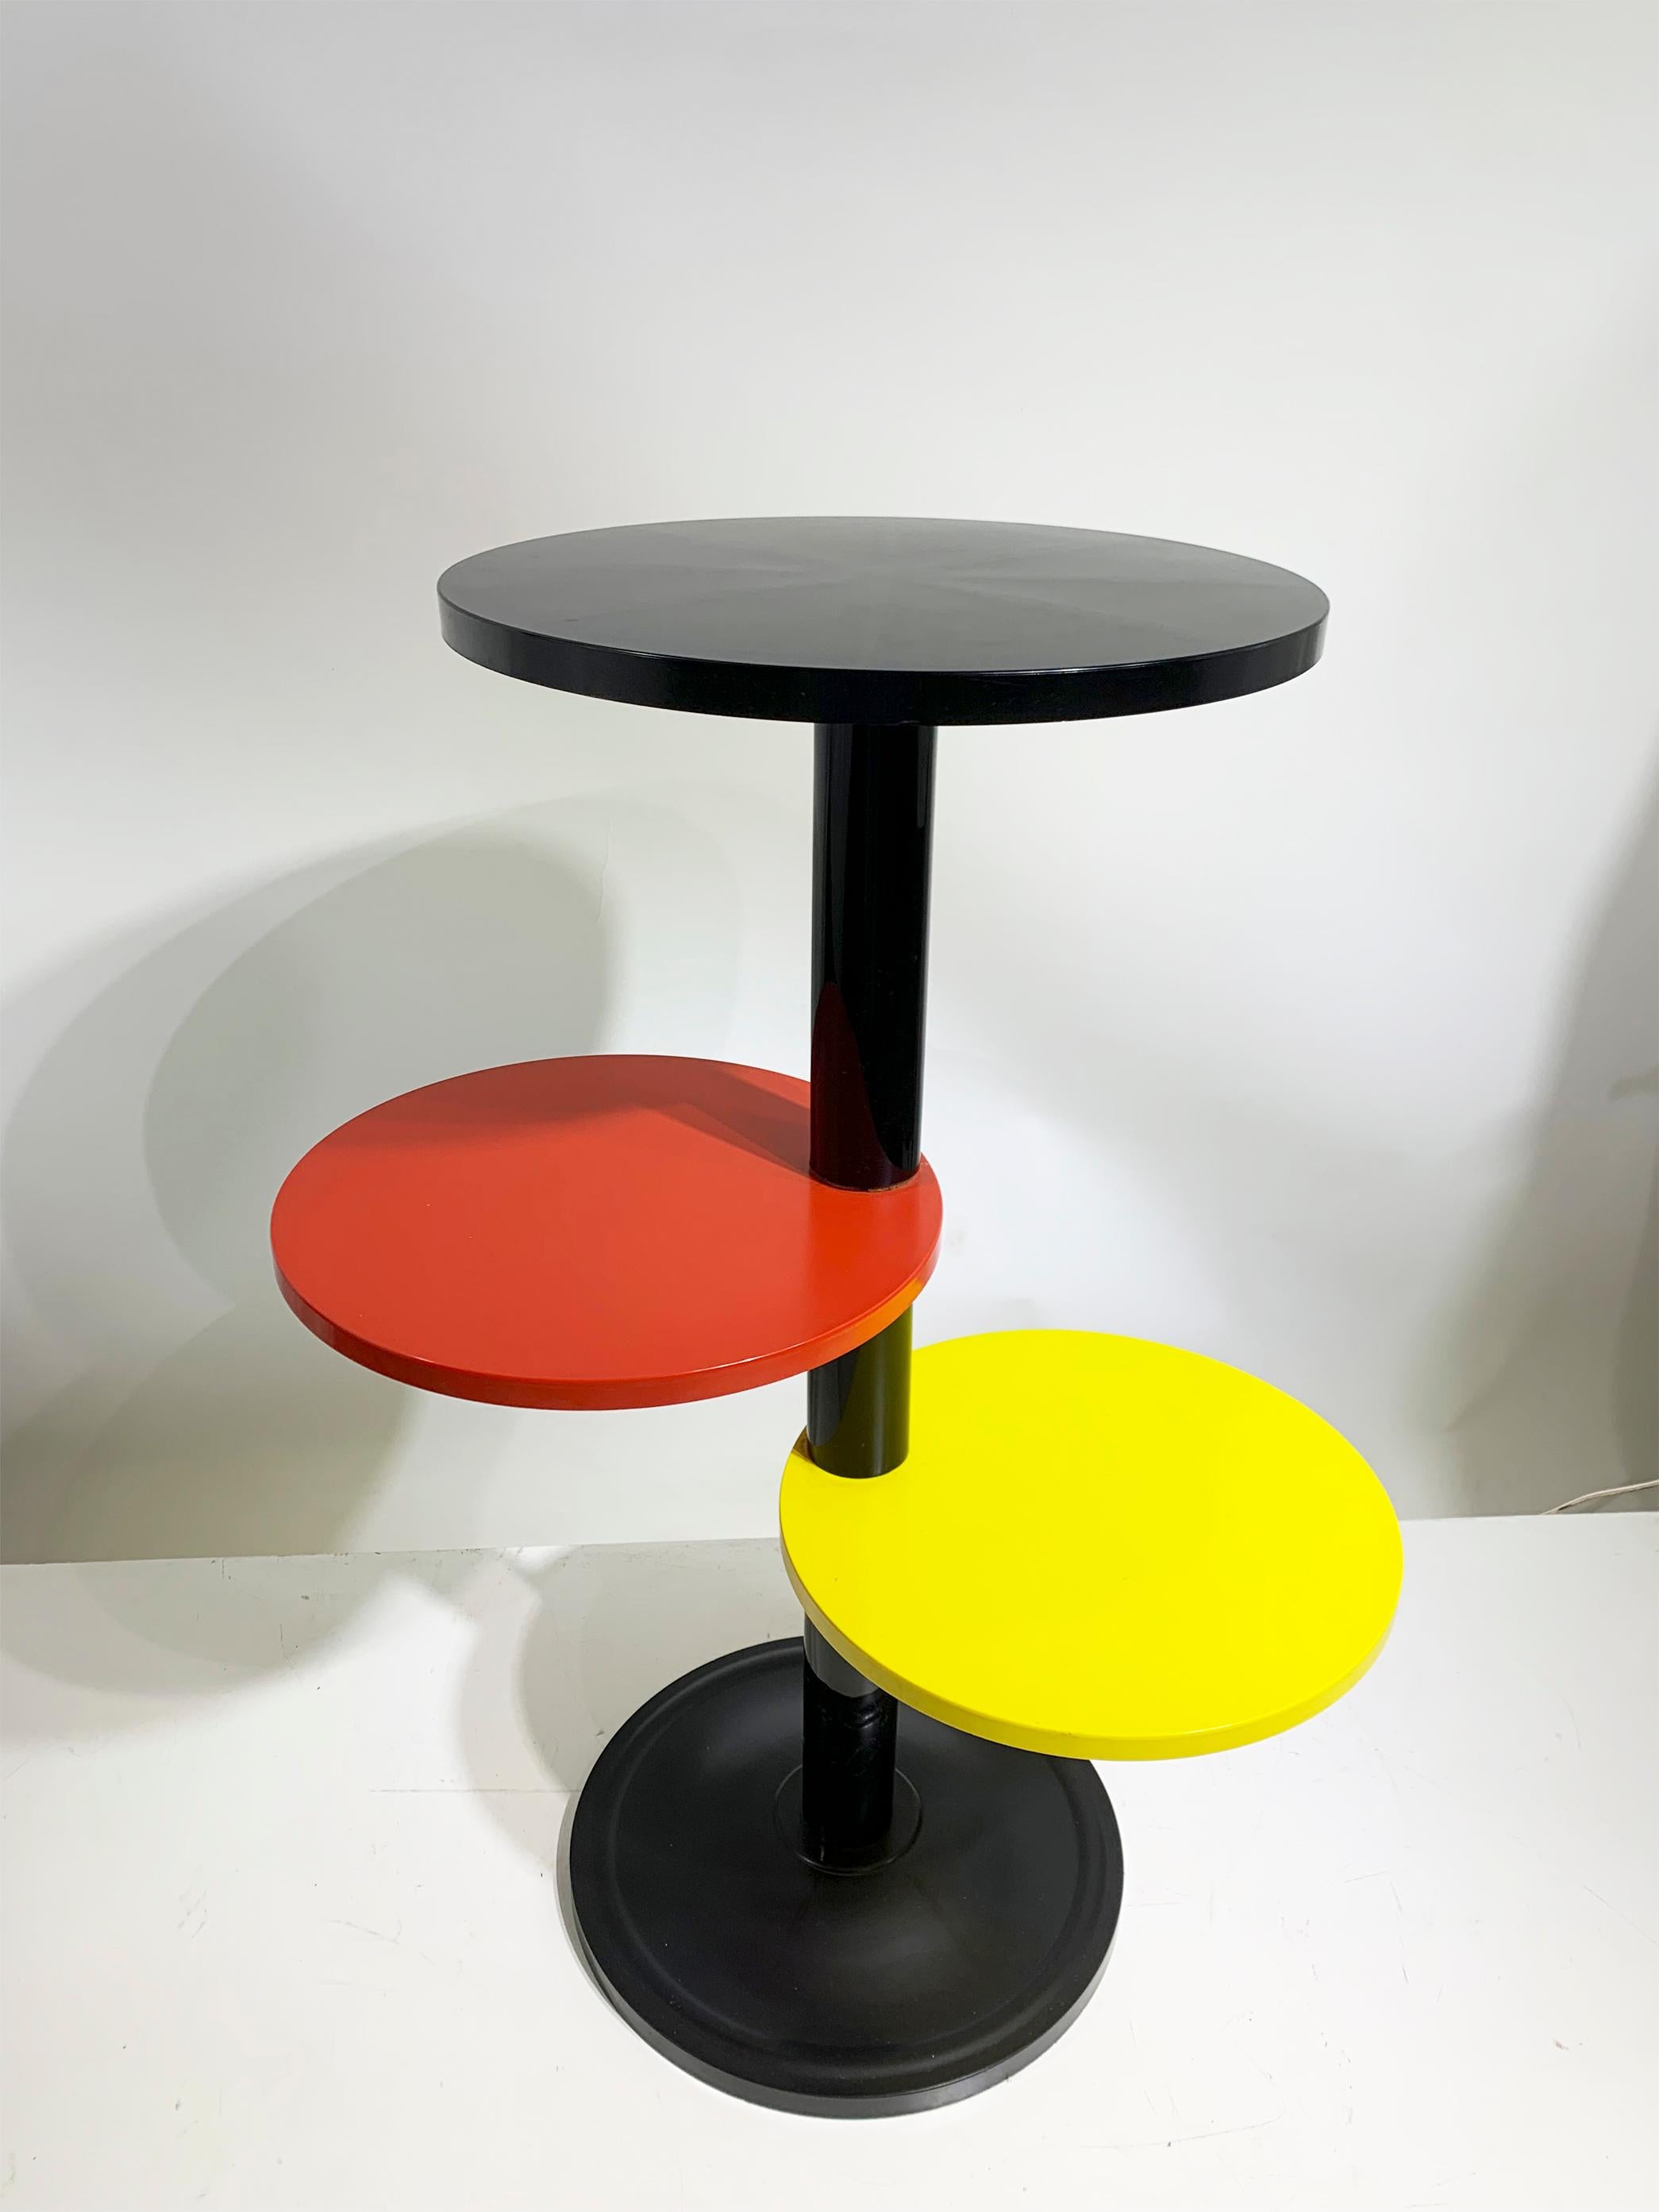 Ce ravissant support de table/plante en plastique français, datant des années 1960, dégage un charme rétro grâce à son design astucieux. Avec ses étagères circulaires dans des teintes noires, rouges et jaunes frappantes, chacune d'entre elles étant